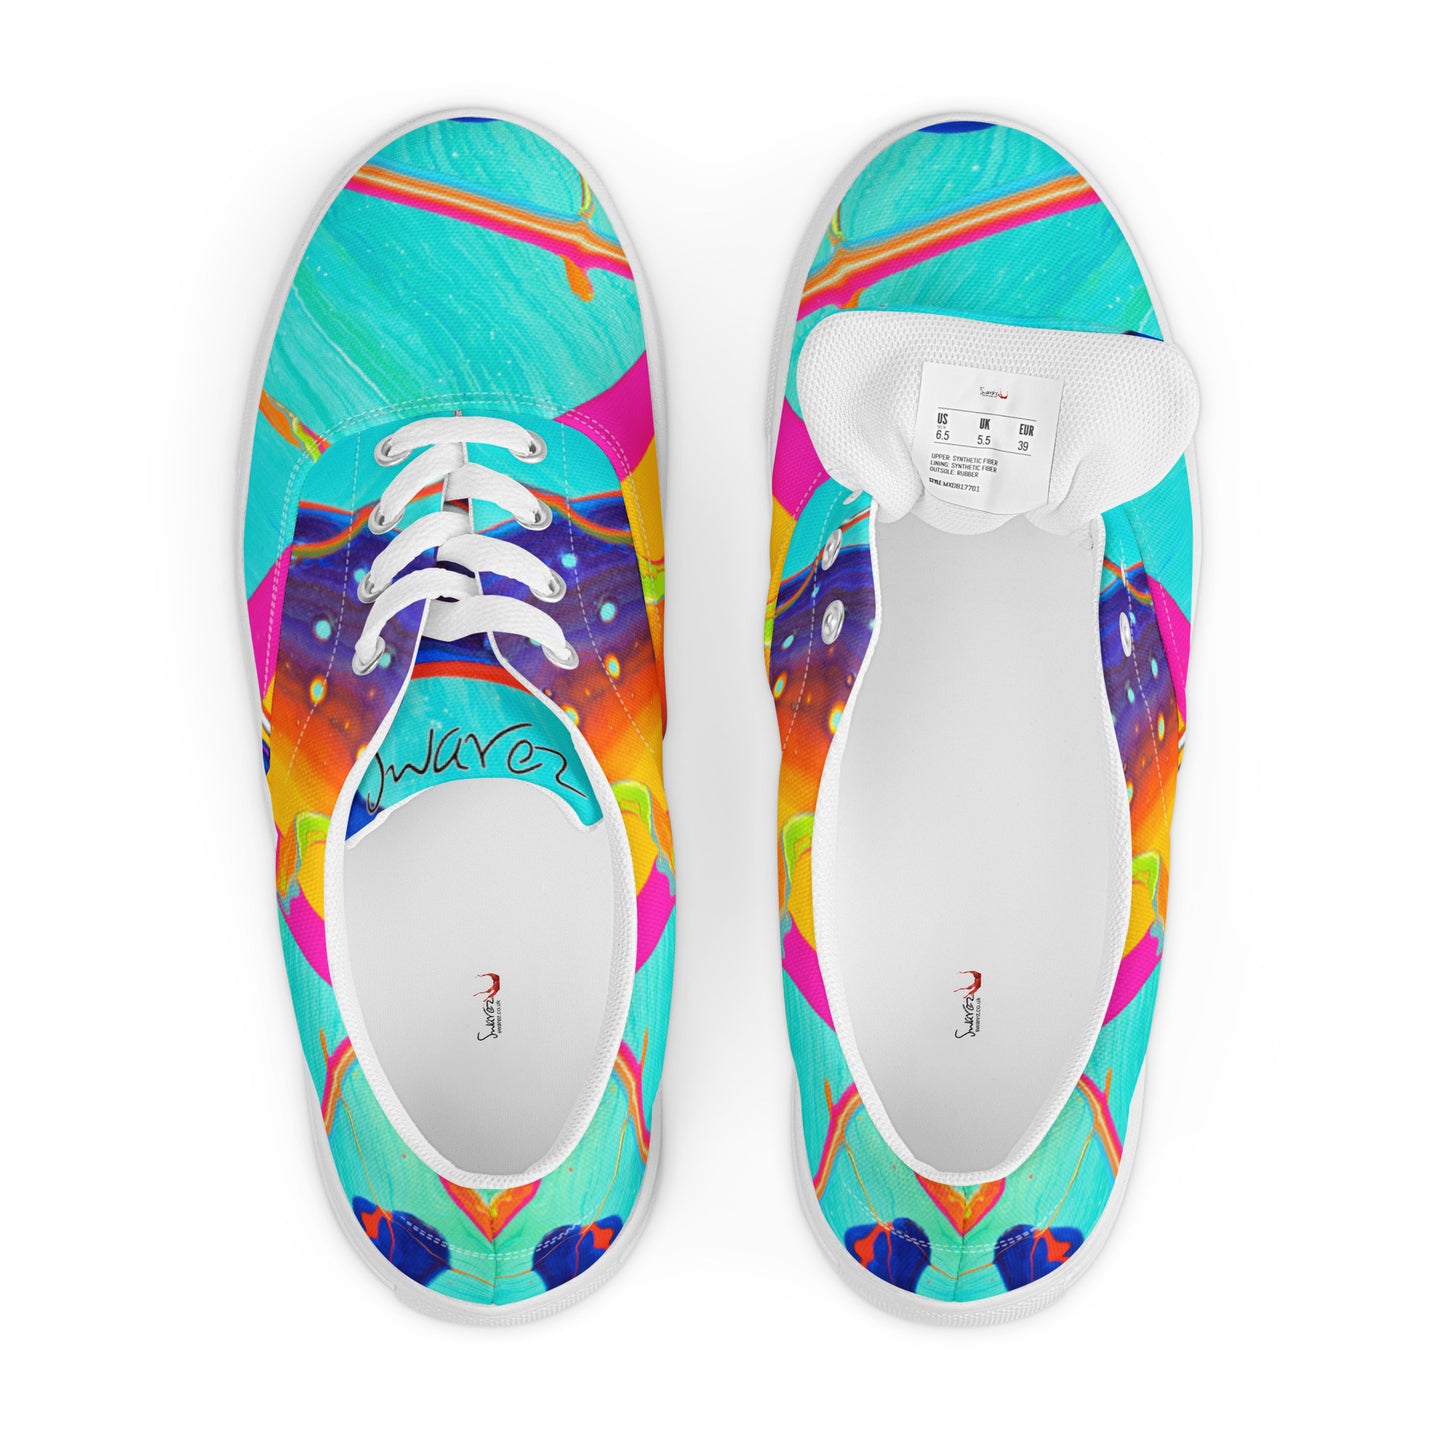 Women’s lace-up canvas shoes - Rainbow design